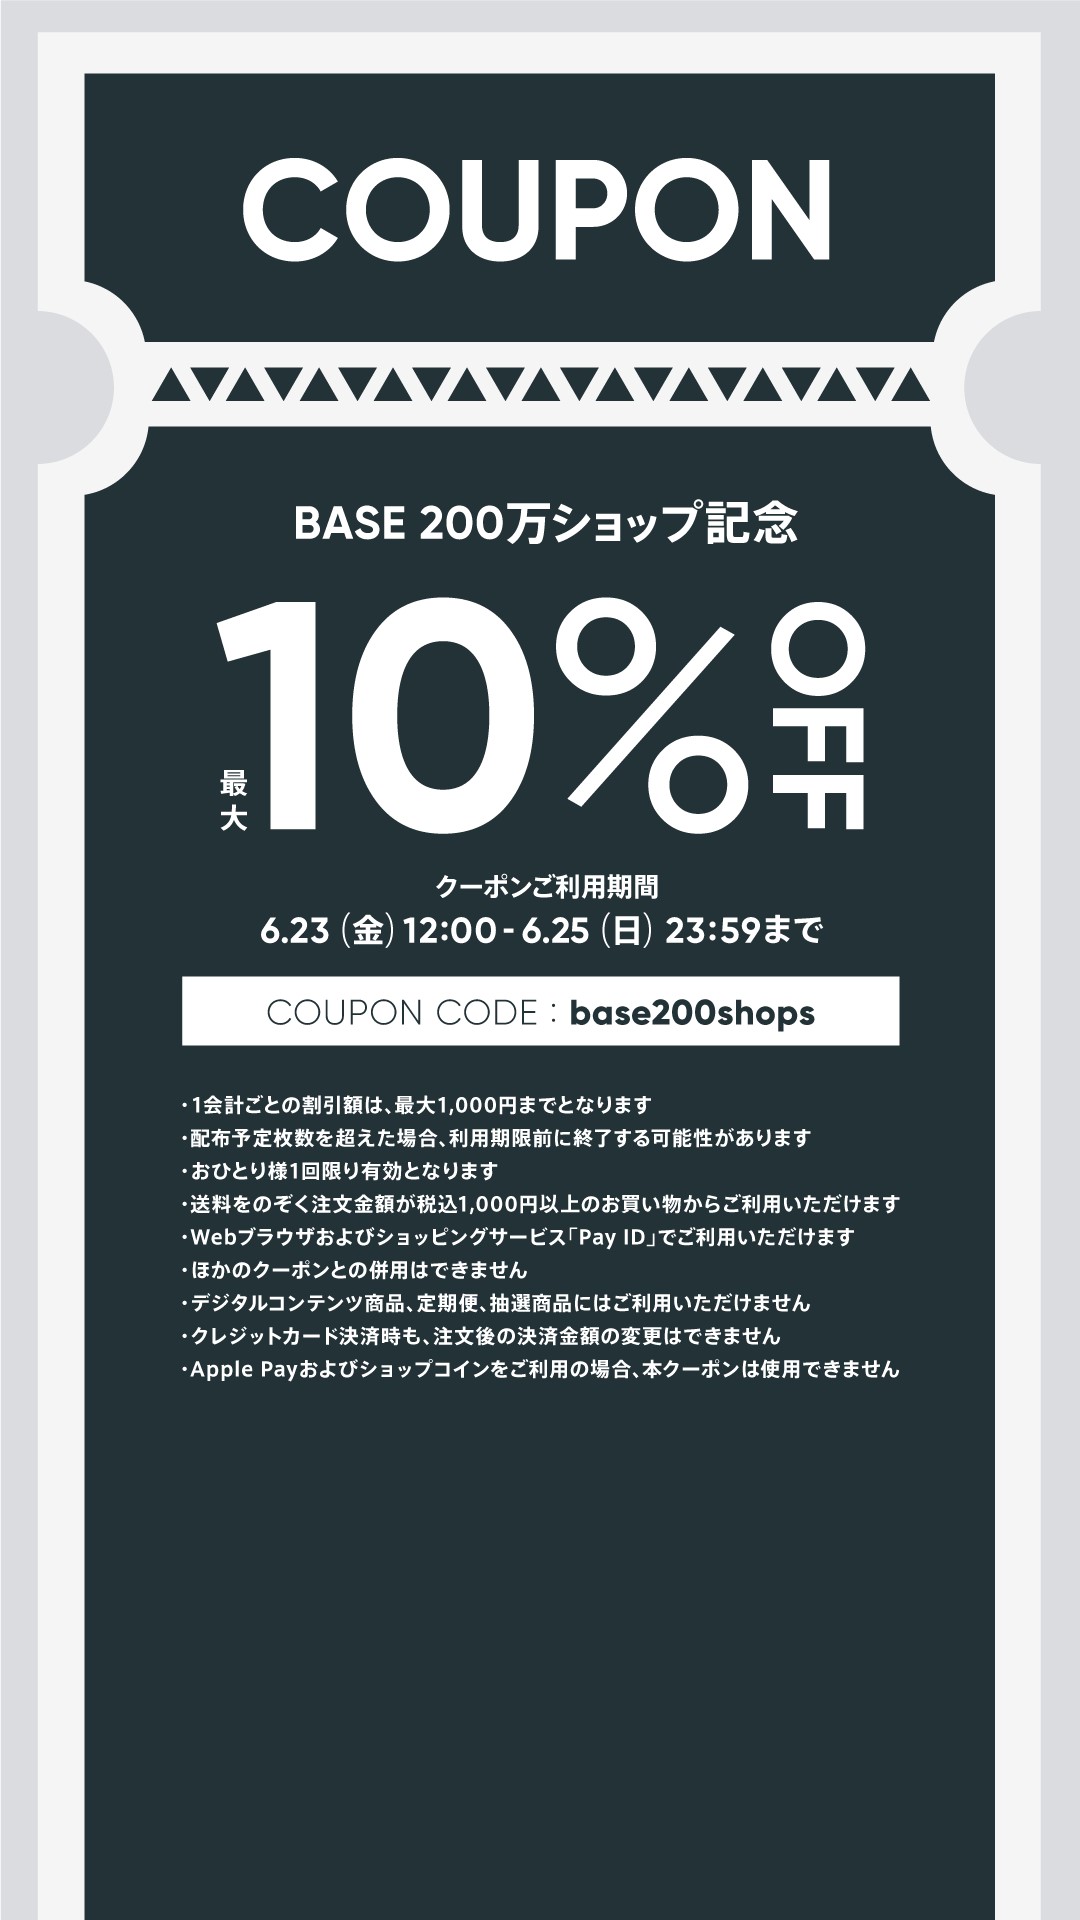 【6/23〜25限定】 お得な最大10%OFFクーポンをプレゼント♪ 「base200shops」